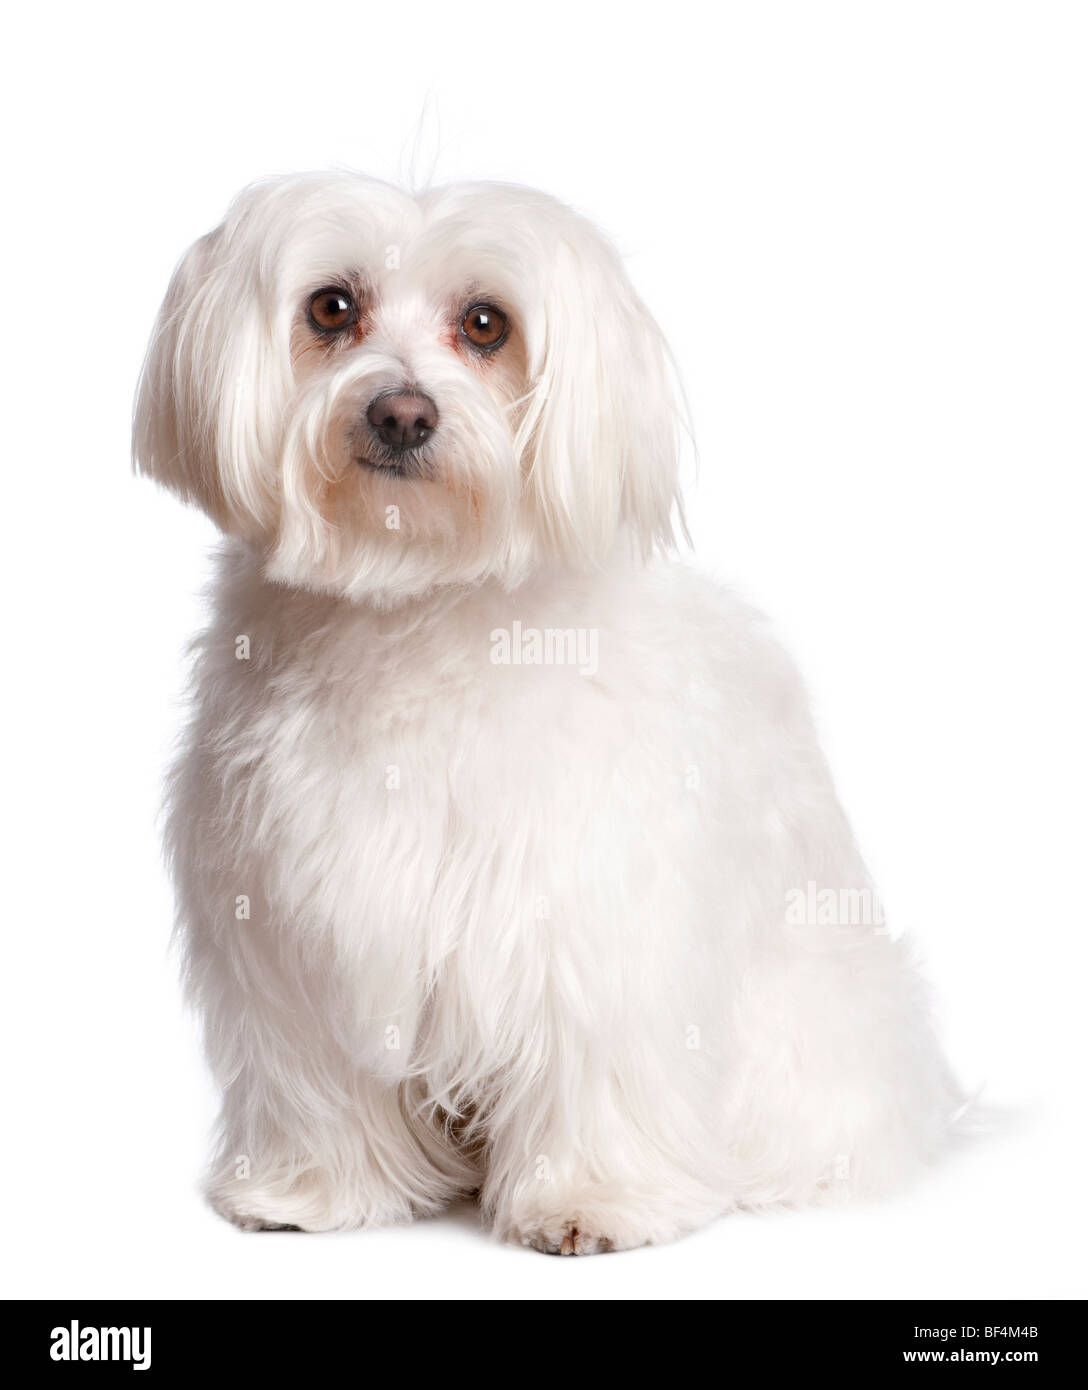 Retrato de perro maltés delante de un fondo blanco, Foto de estudio Foto de stock